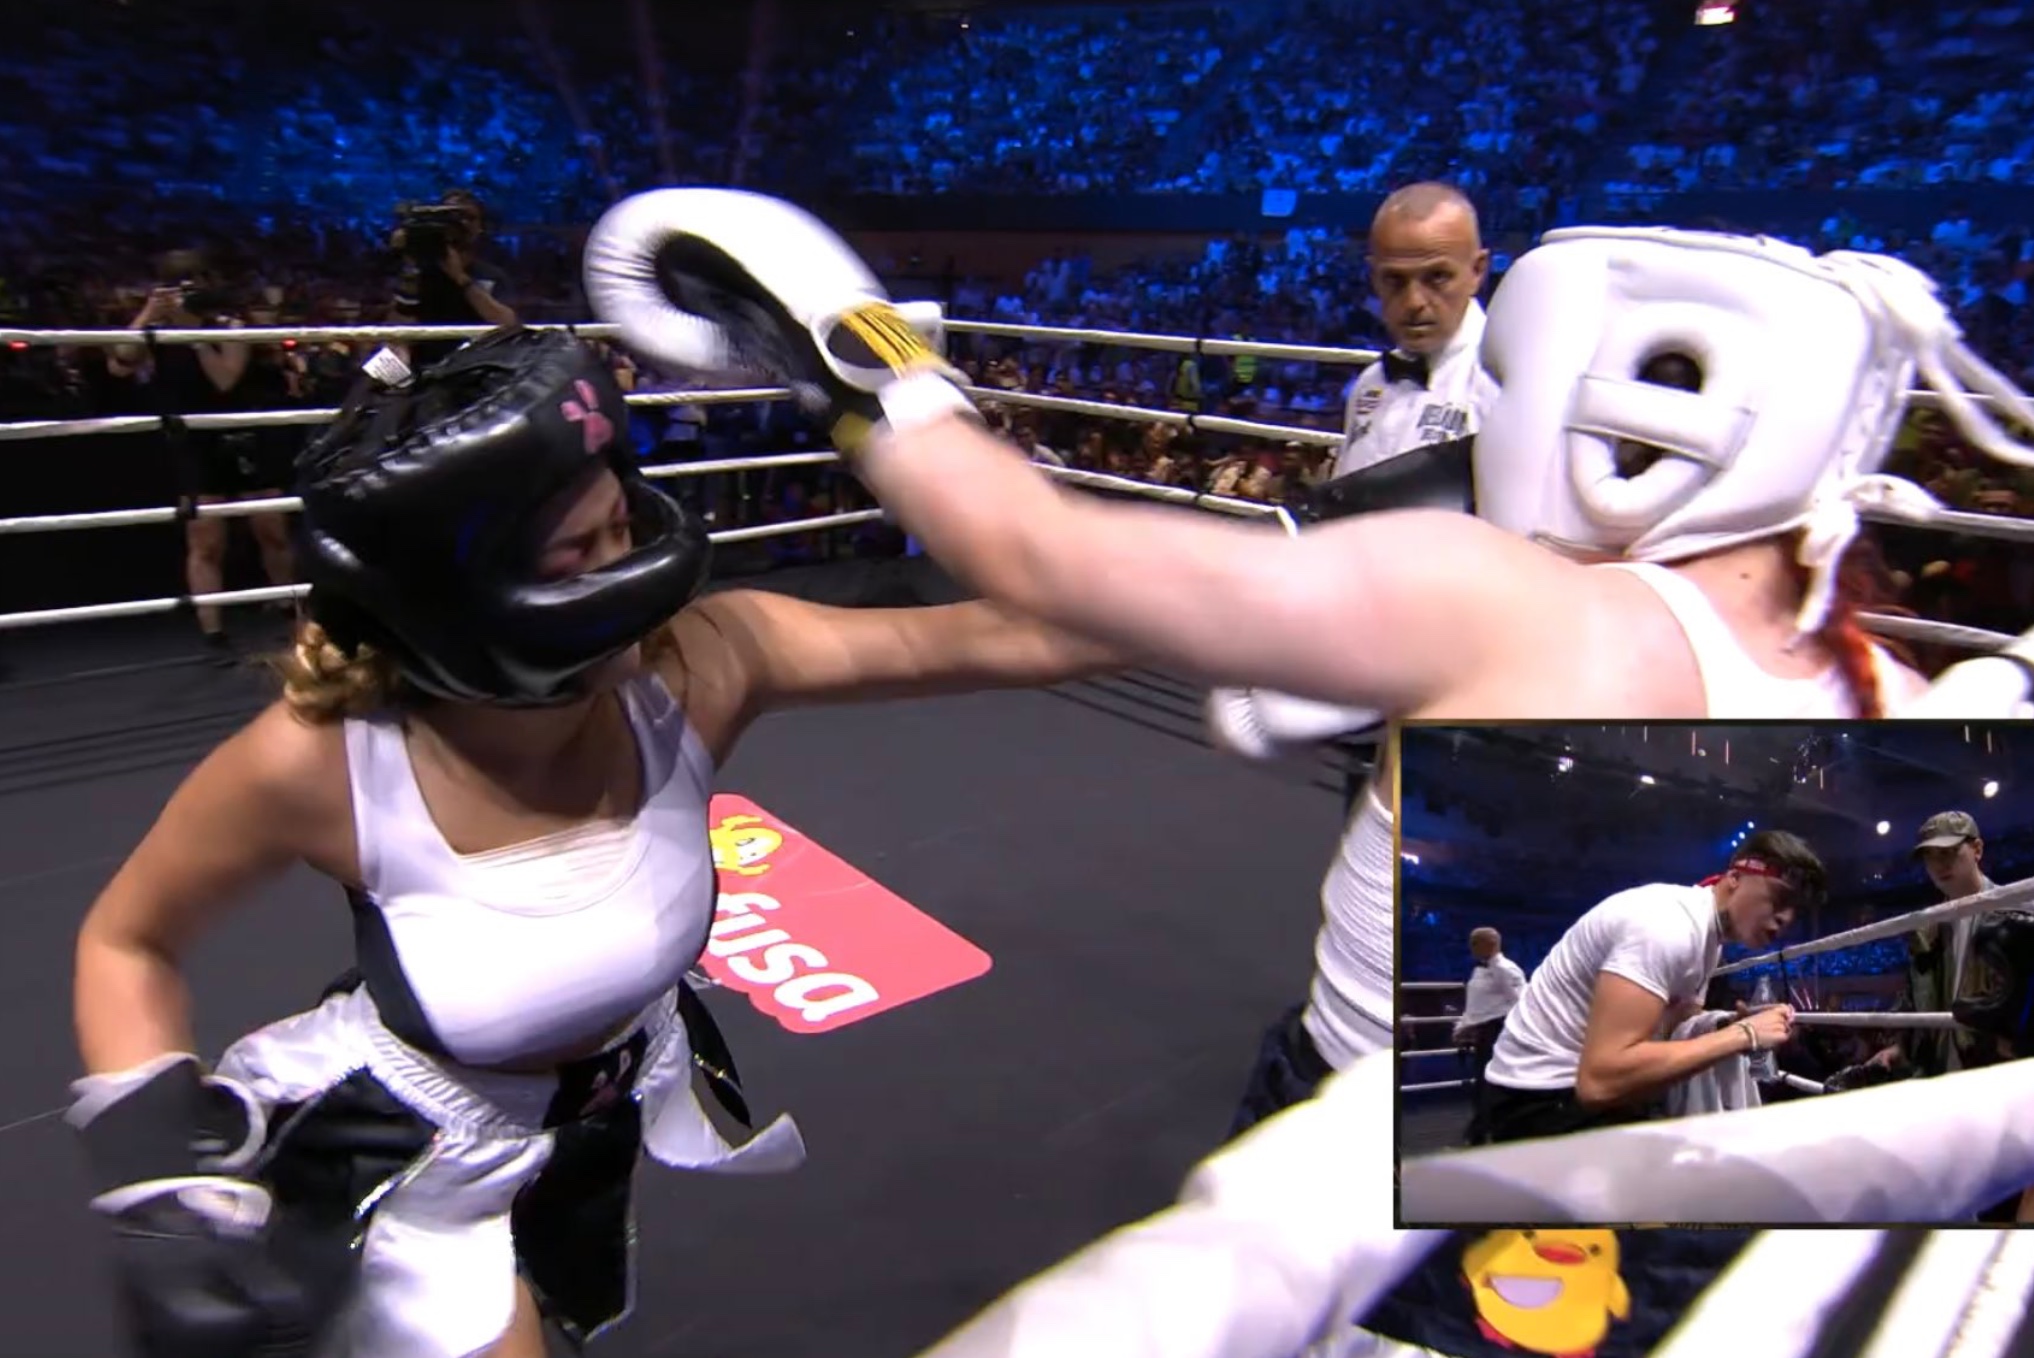 La streamer mexicana, Arigameplays, triunfó en emocionante pelea de box de la Velada del Año 2